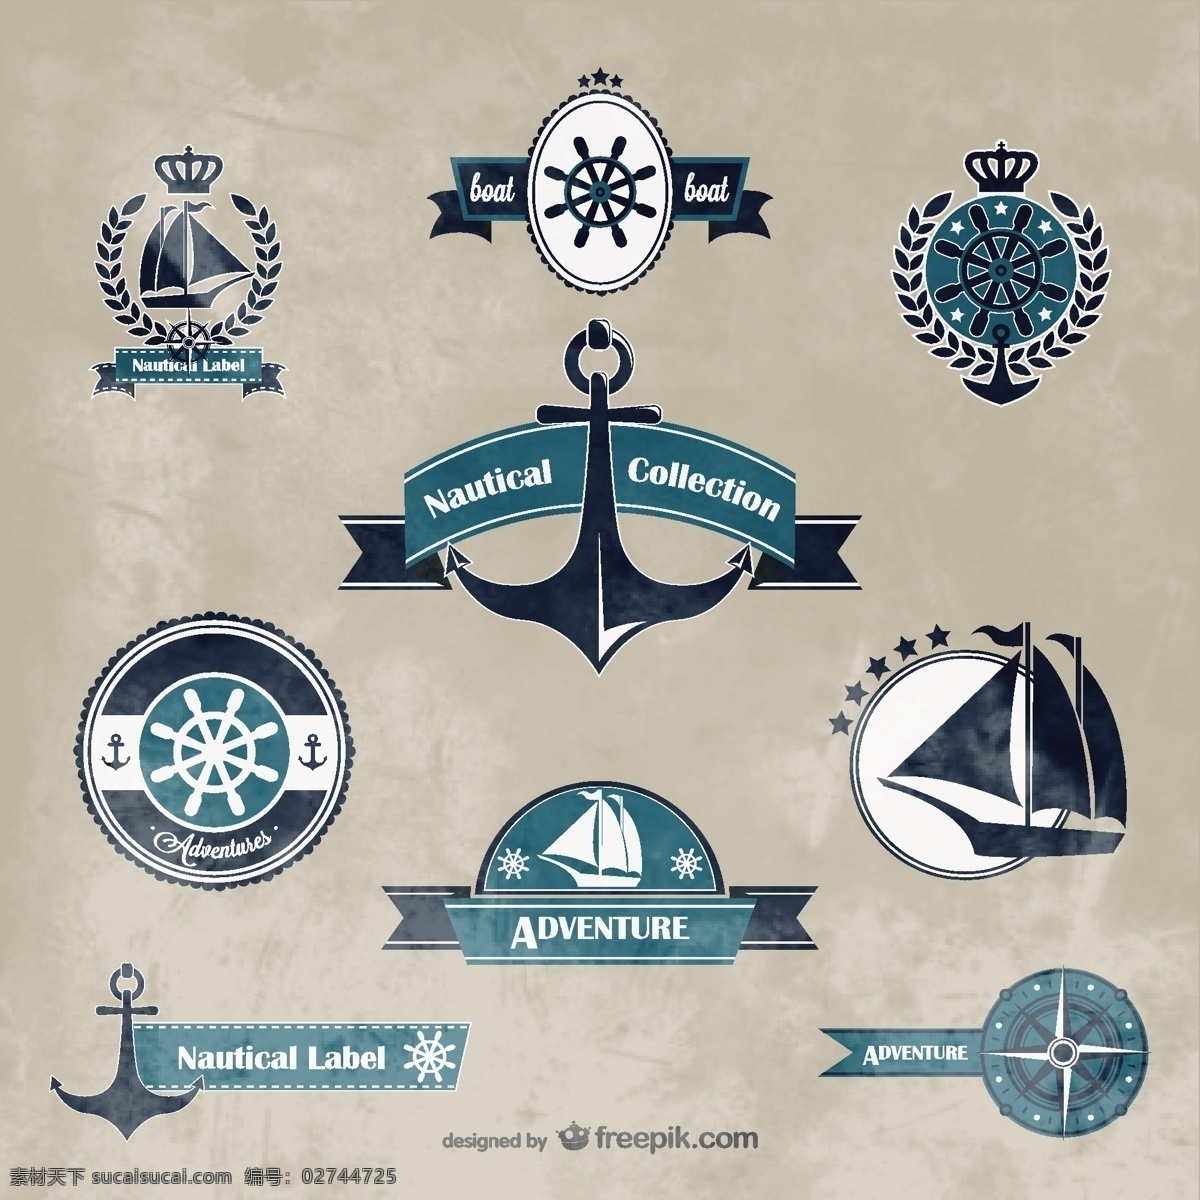 航海标志集合 复古 标签 夏天 旅行 海 模板 垃圾 图形 布局 船 船锚 平面设计 航海 海洋元素 灰色